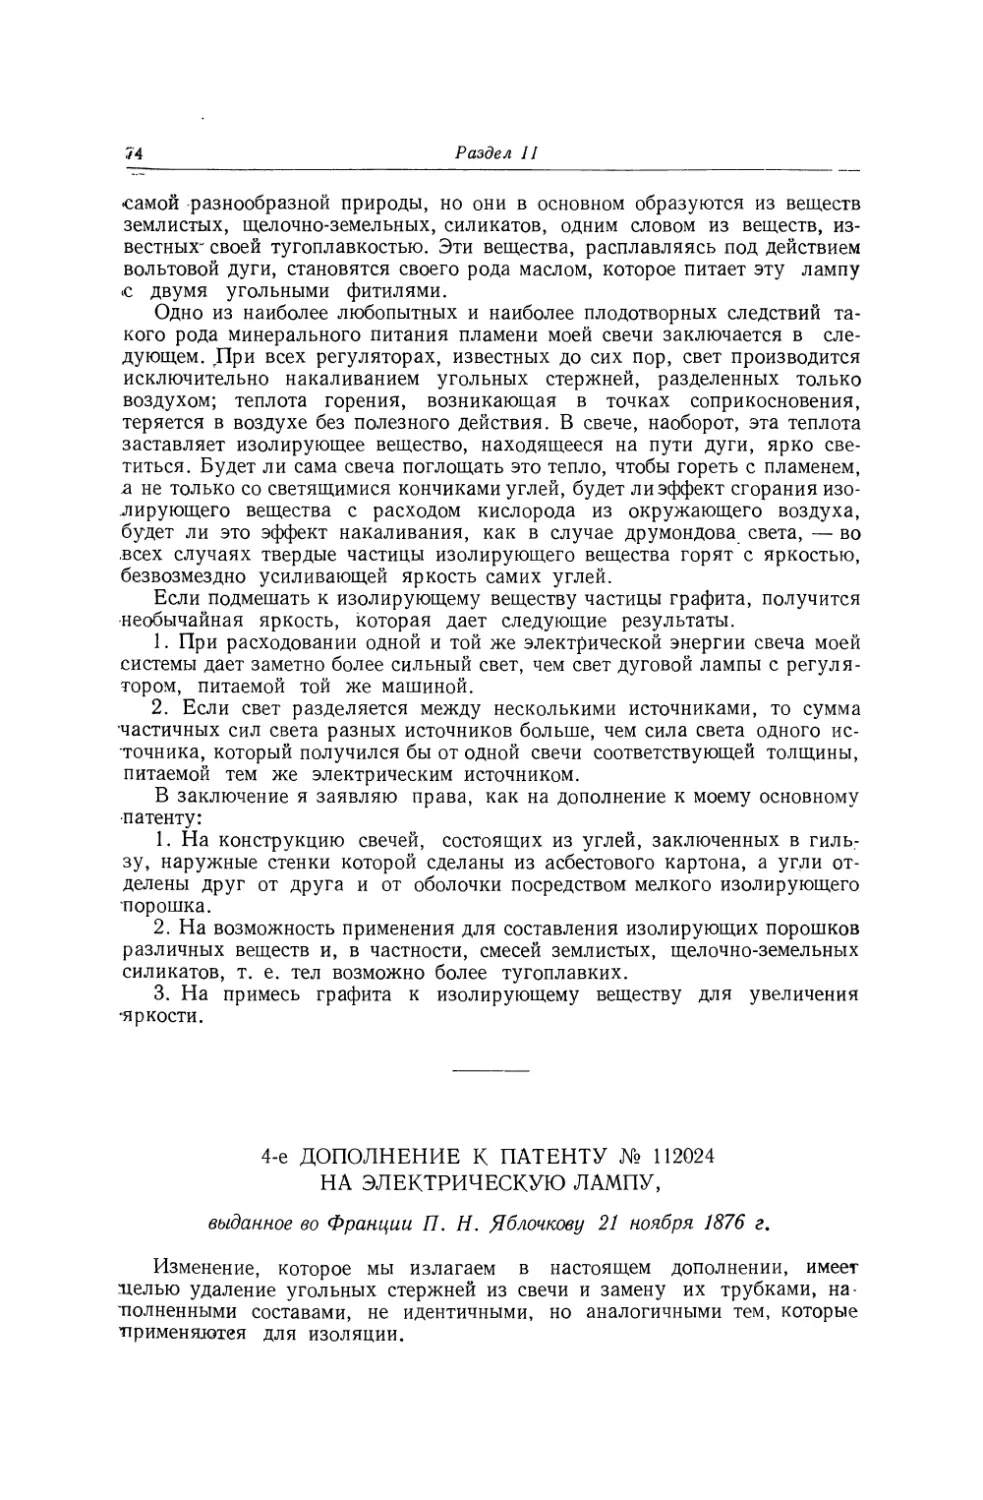 4-е дополнение к патенту № 112024 на электрическую лампу, выданное во Франции П. Н. Яблочкову 21 ноября 1876 г